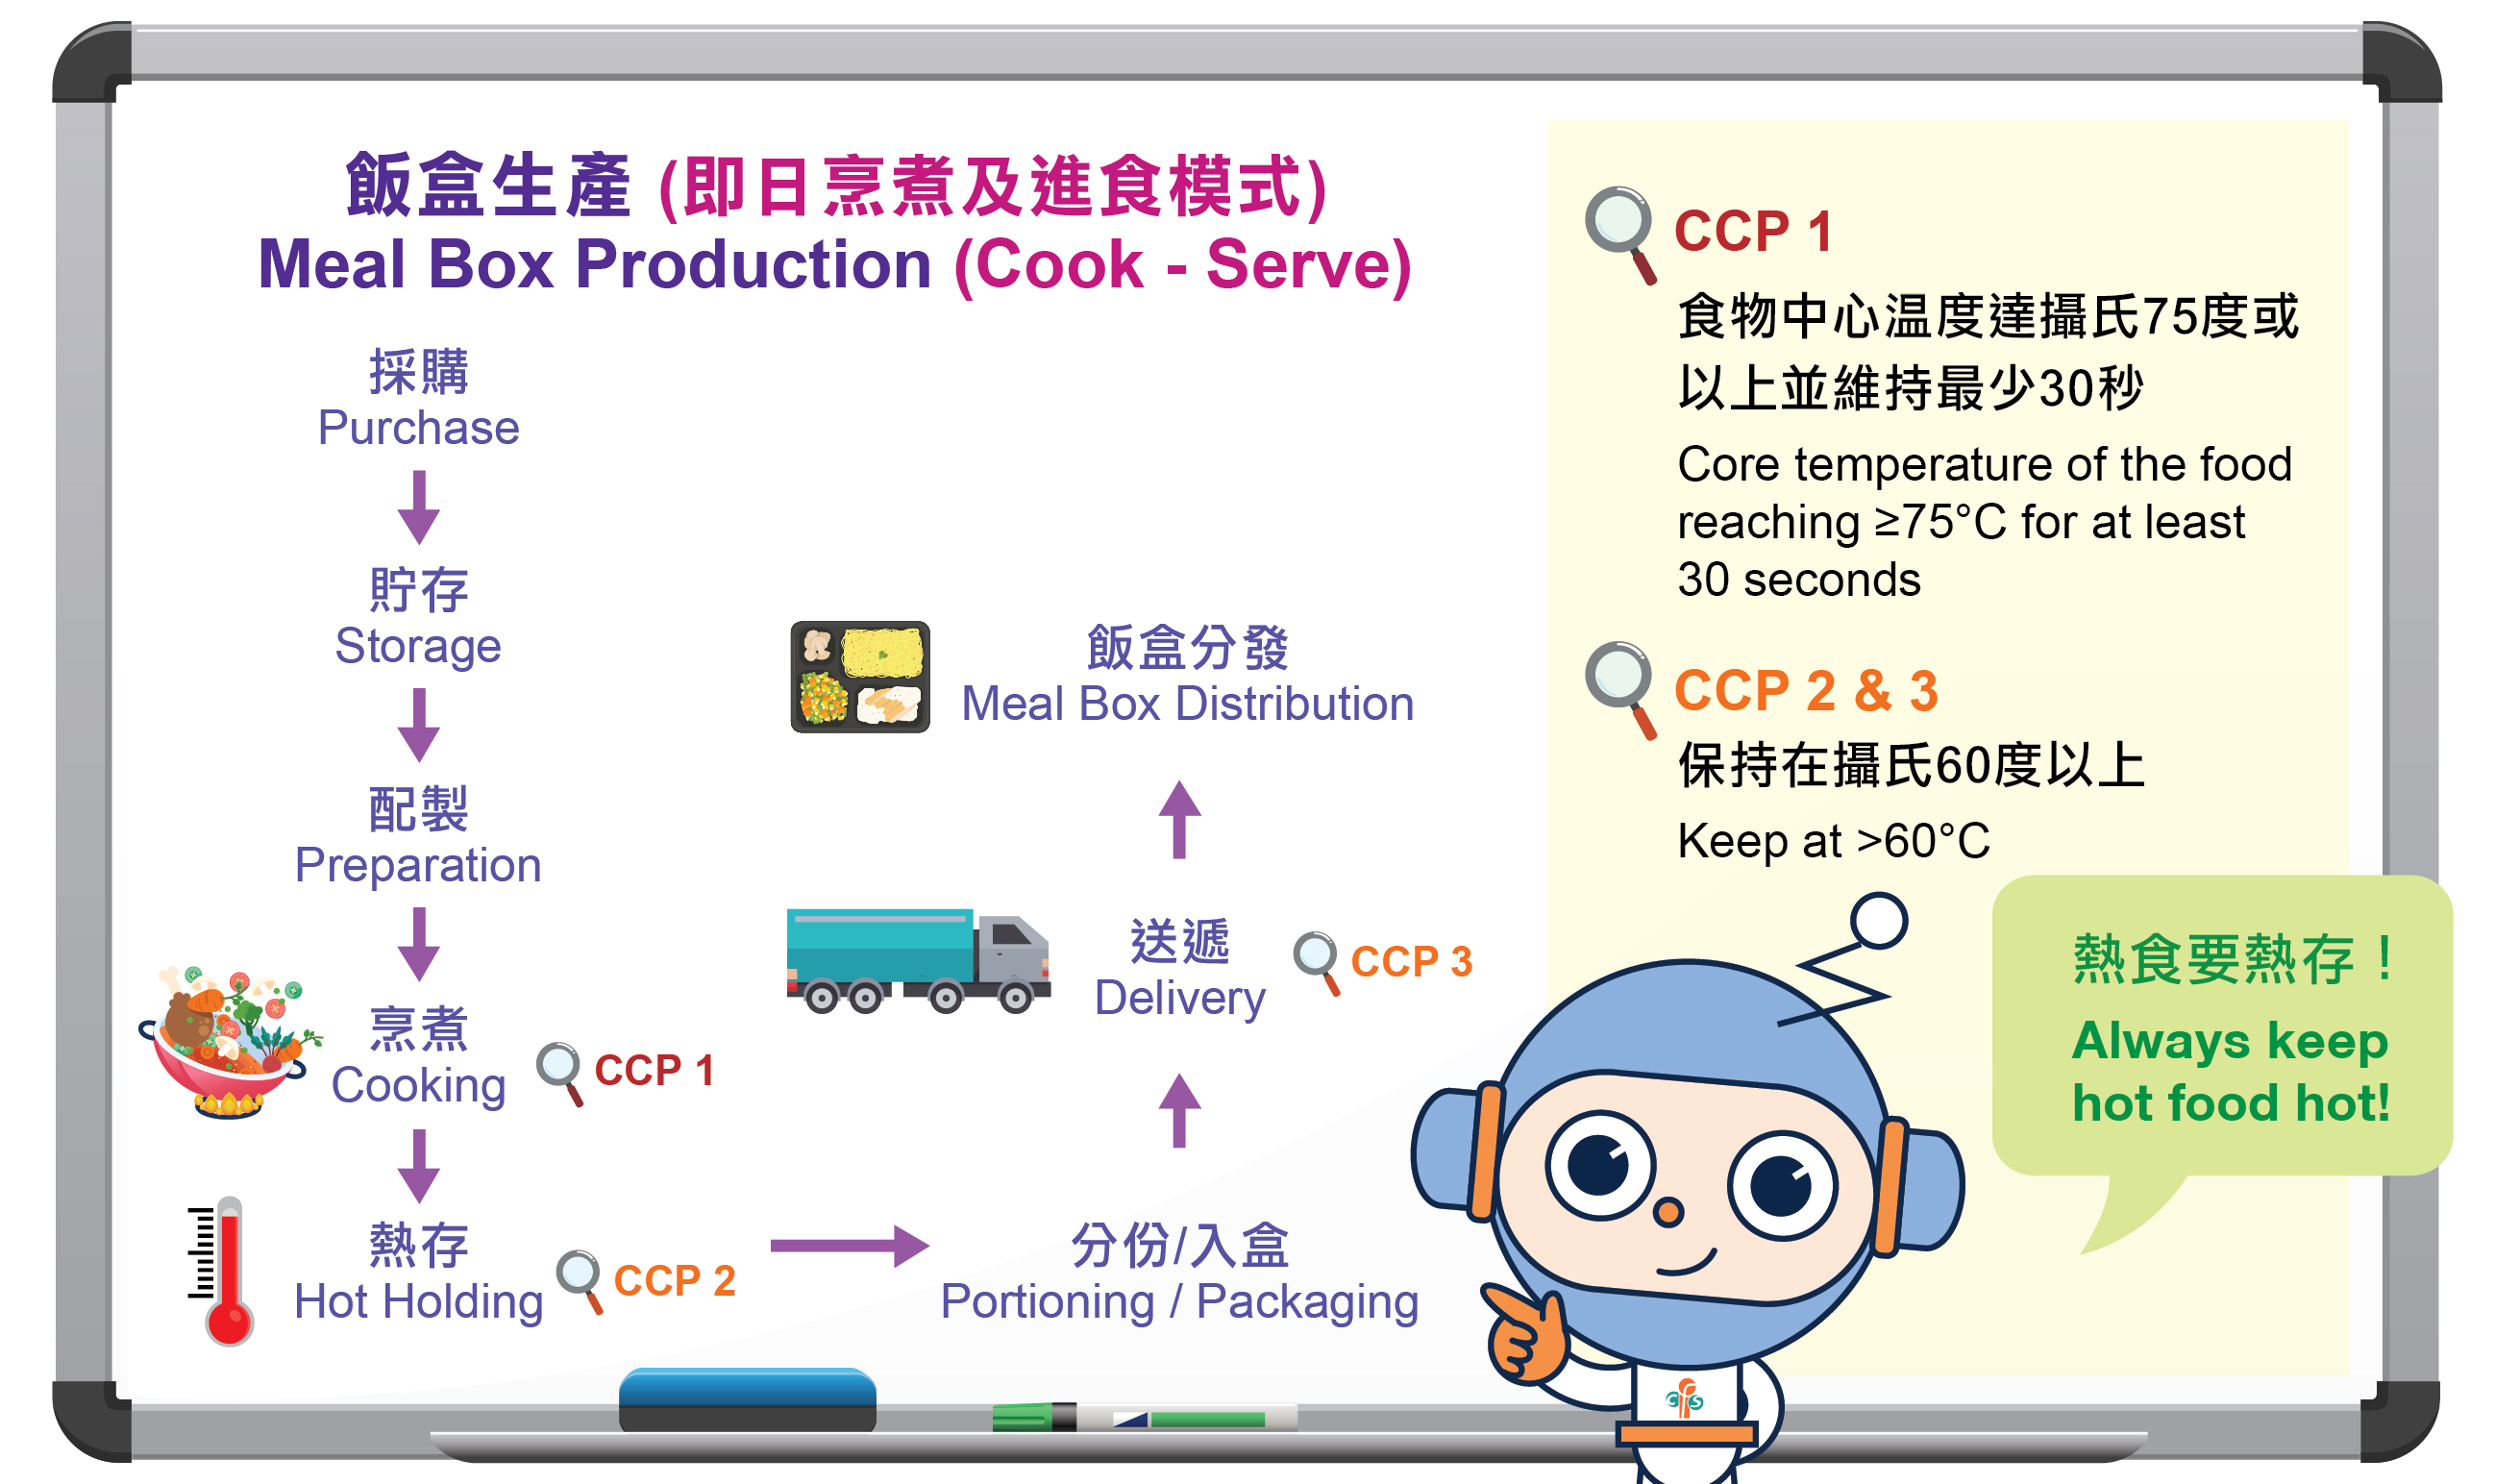 飯盒生產流程圖及控制重點(CCP)